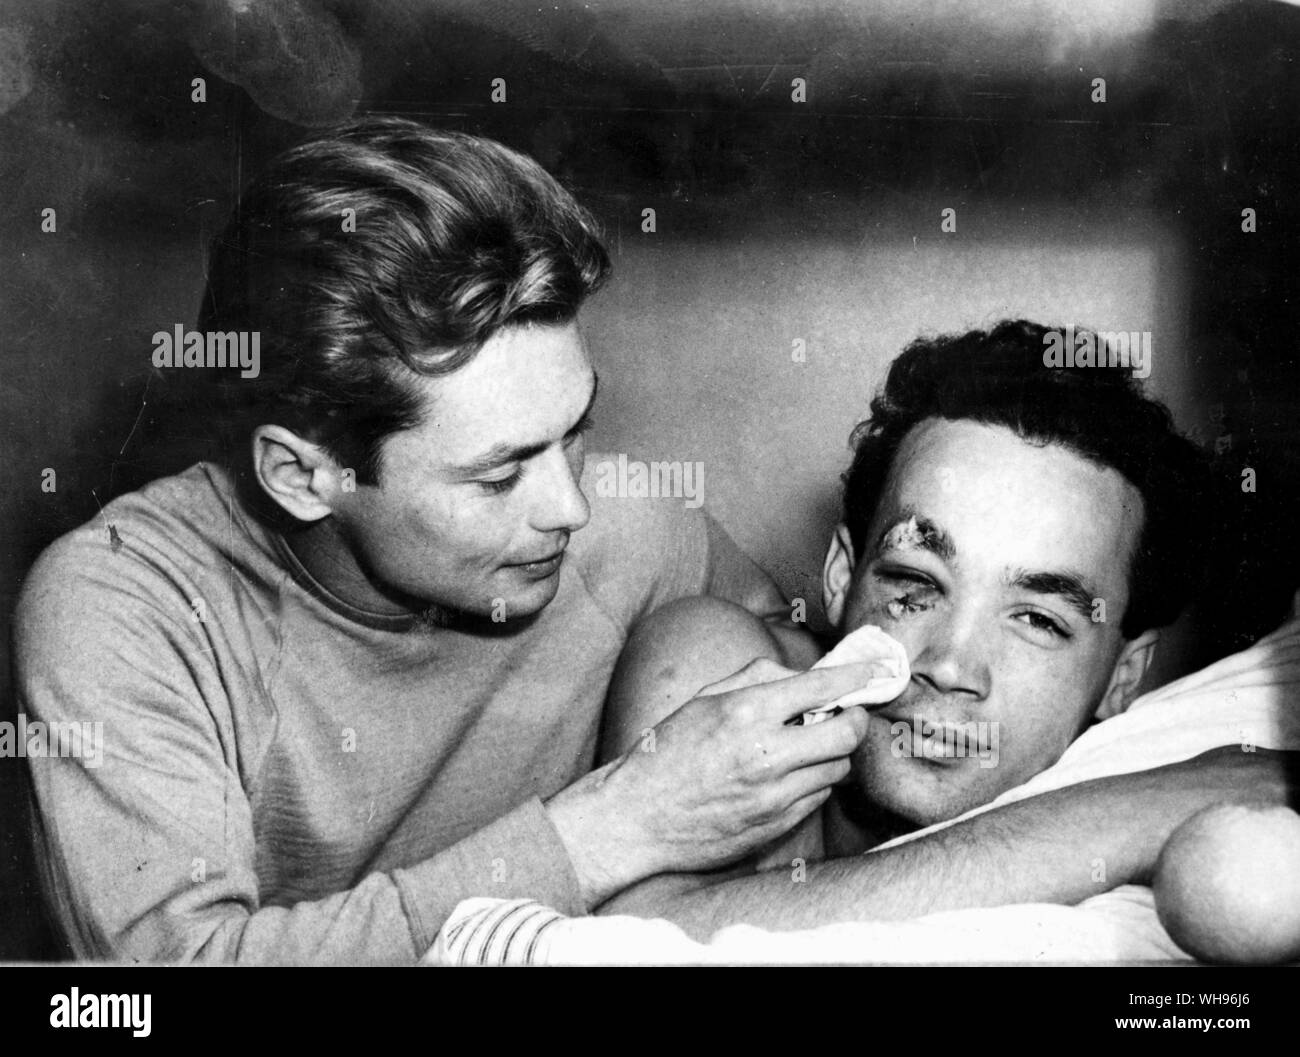 Aus., Melbourne, Olympics, 1956: Ervin Zador (Ungarn) erhält einige medizinische Aufmerksamkeit von einem Teamkollegen, Miklos Martin, nach einem Wasserball Spiel gegen die UDSSR. Stockfoto